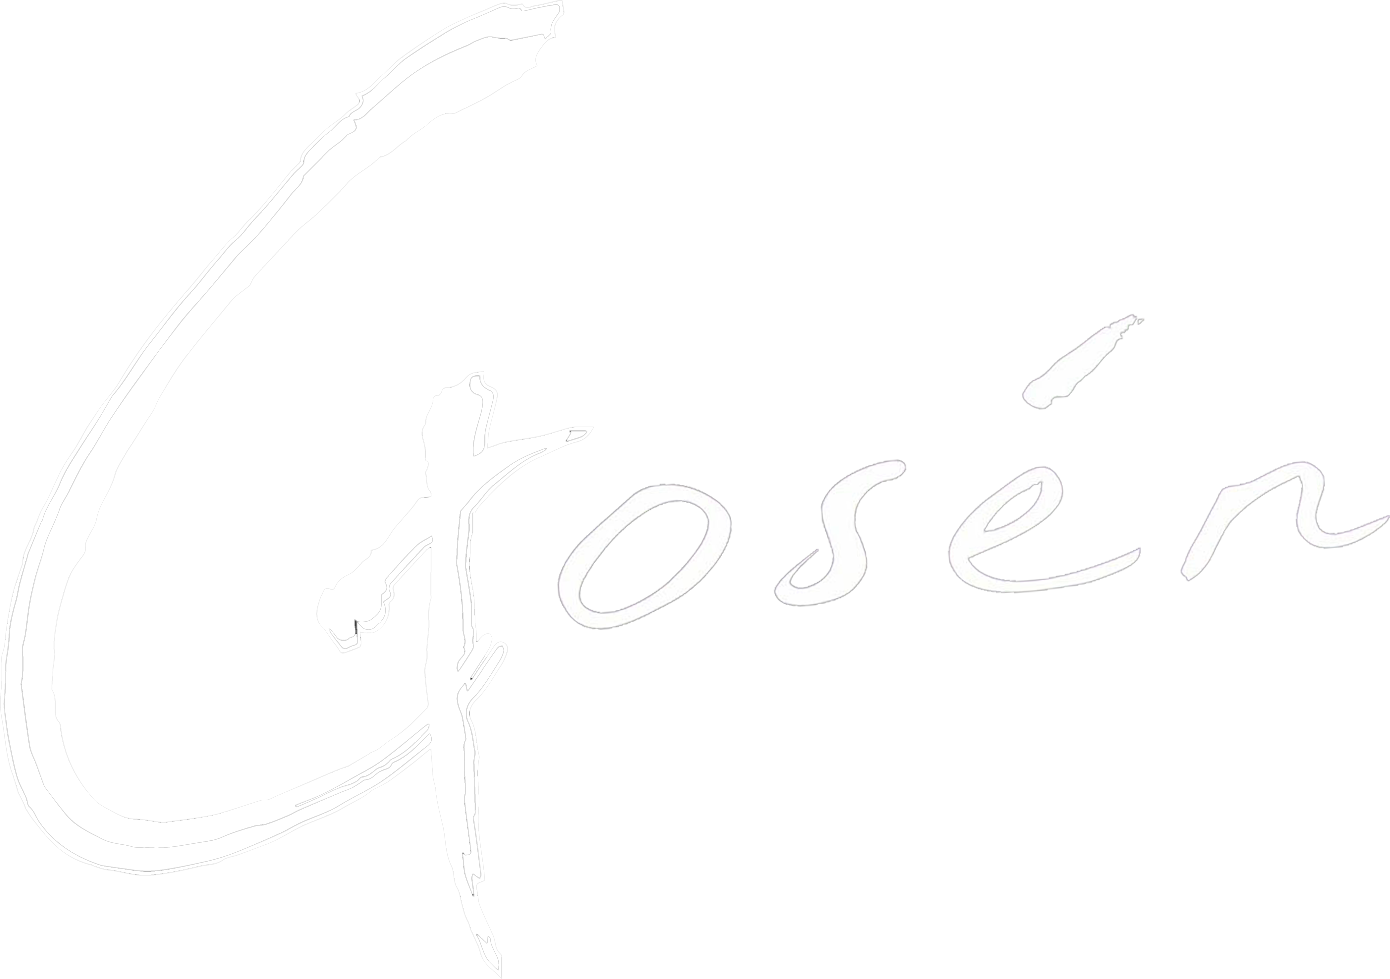 Gosen Logo